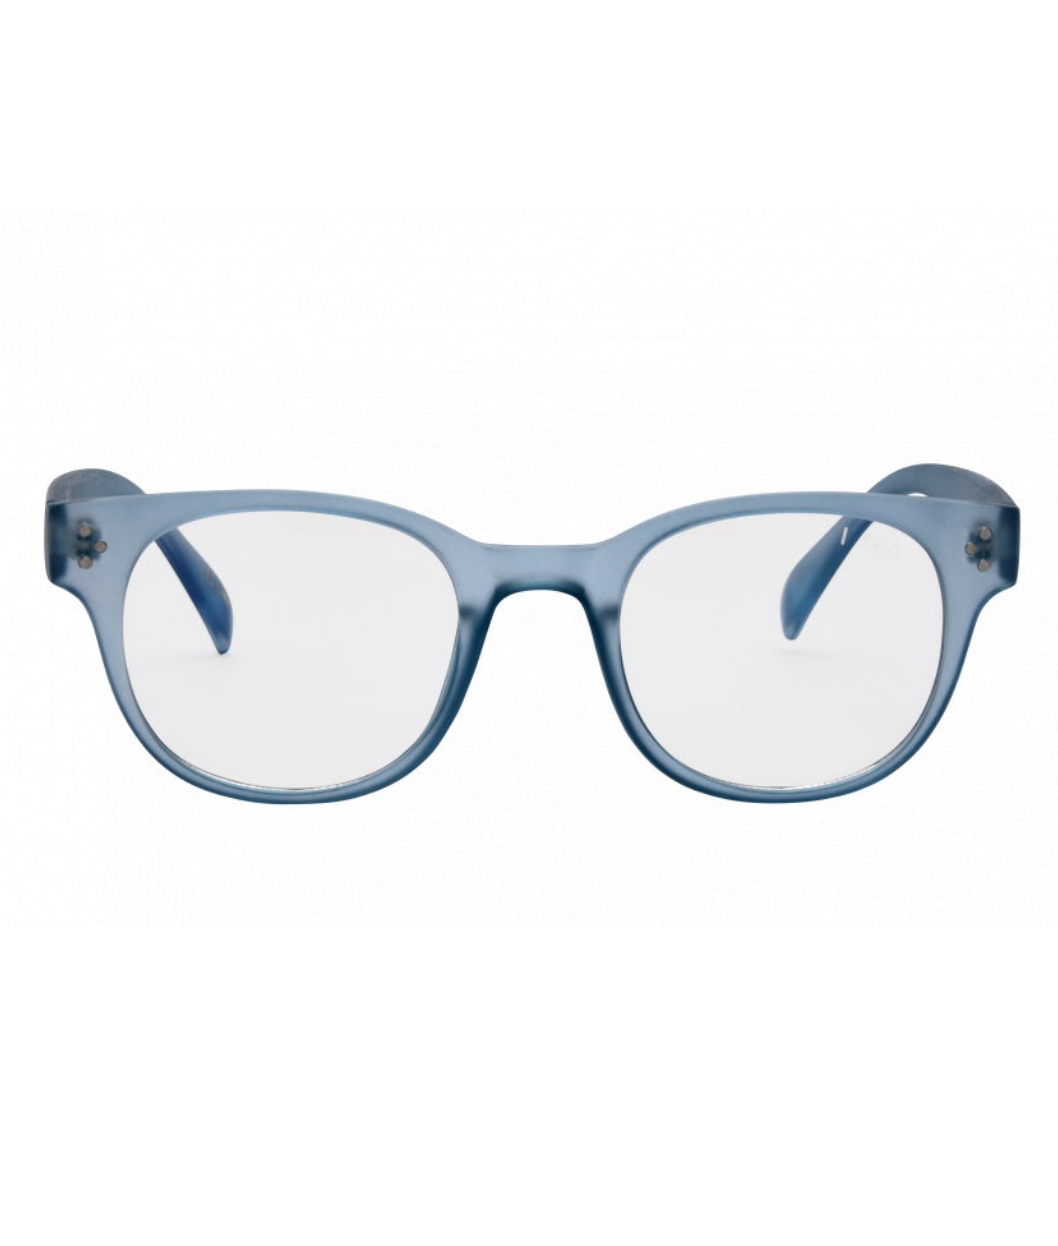 Petra iSea Blue Light Glasses - Baby Blue - Clothe Boutique